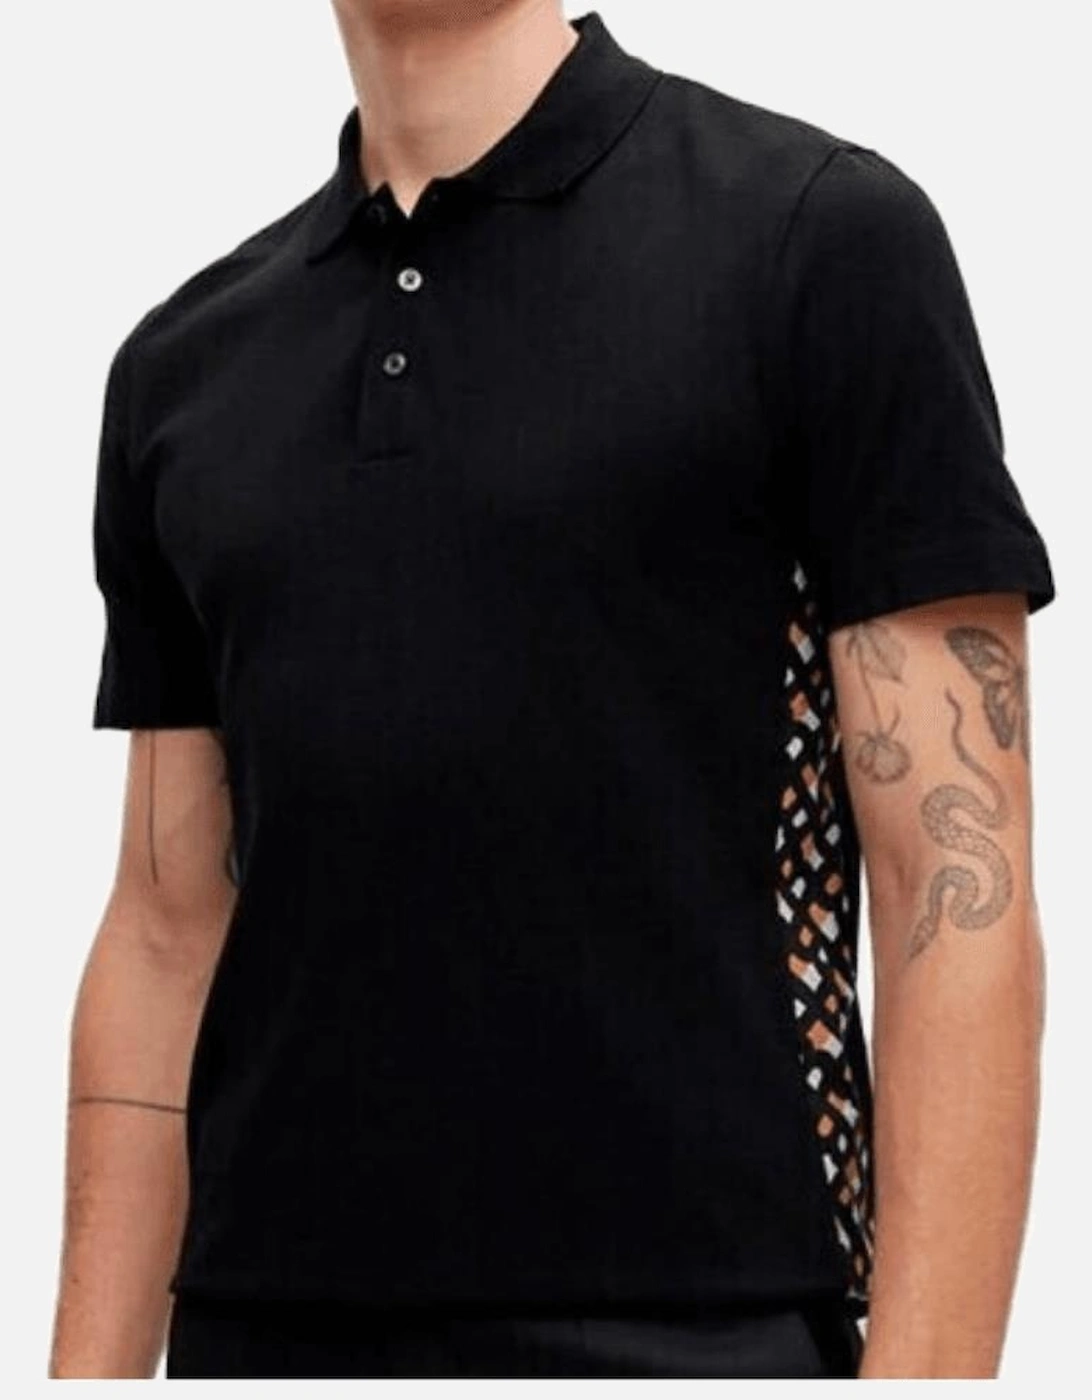 Parlay 184 Pique Cotton Black Polo Shirt